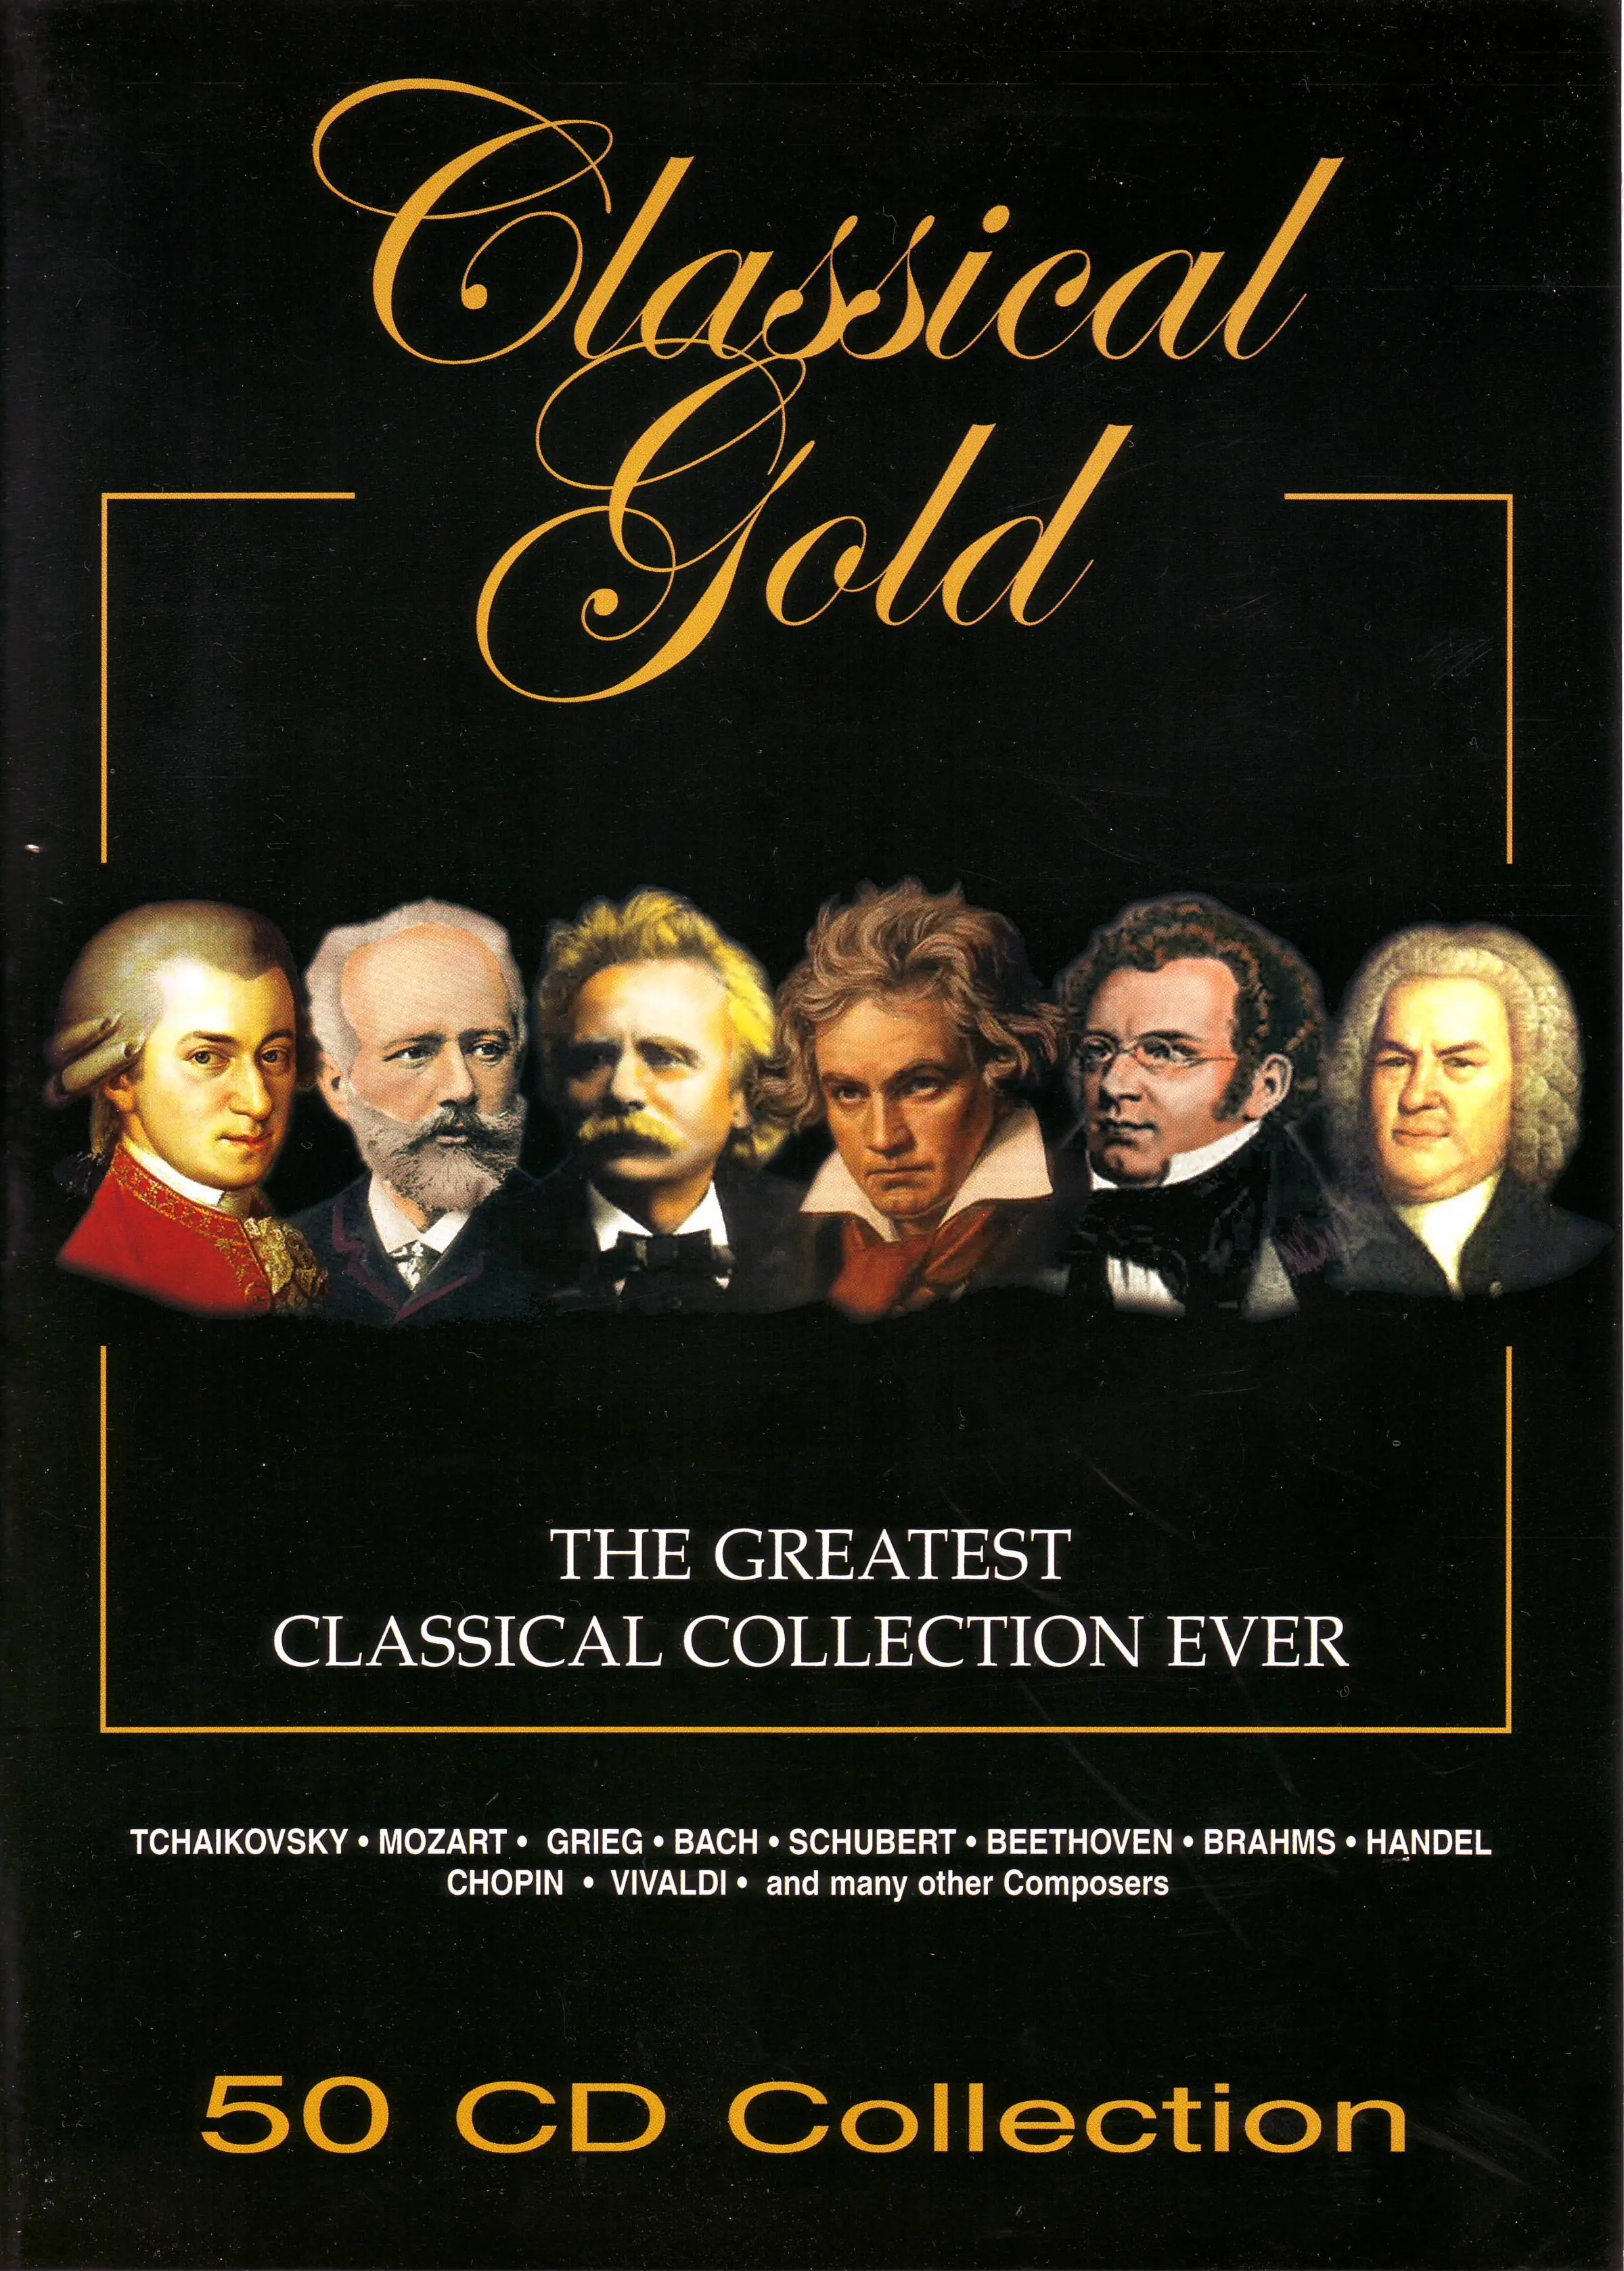 Спокойной классической. Classical Gold 50 CD Box Set. Берлиоз фантастическая симфония. Classical Gold-50cd collection Box Set(eu). Классика обложка.